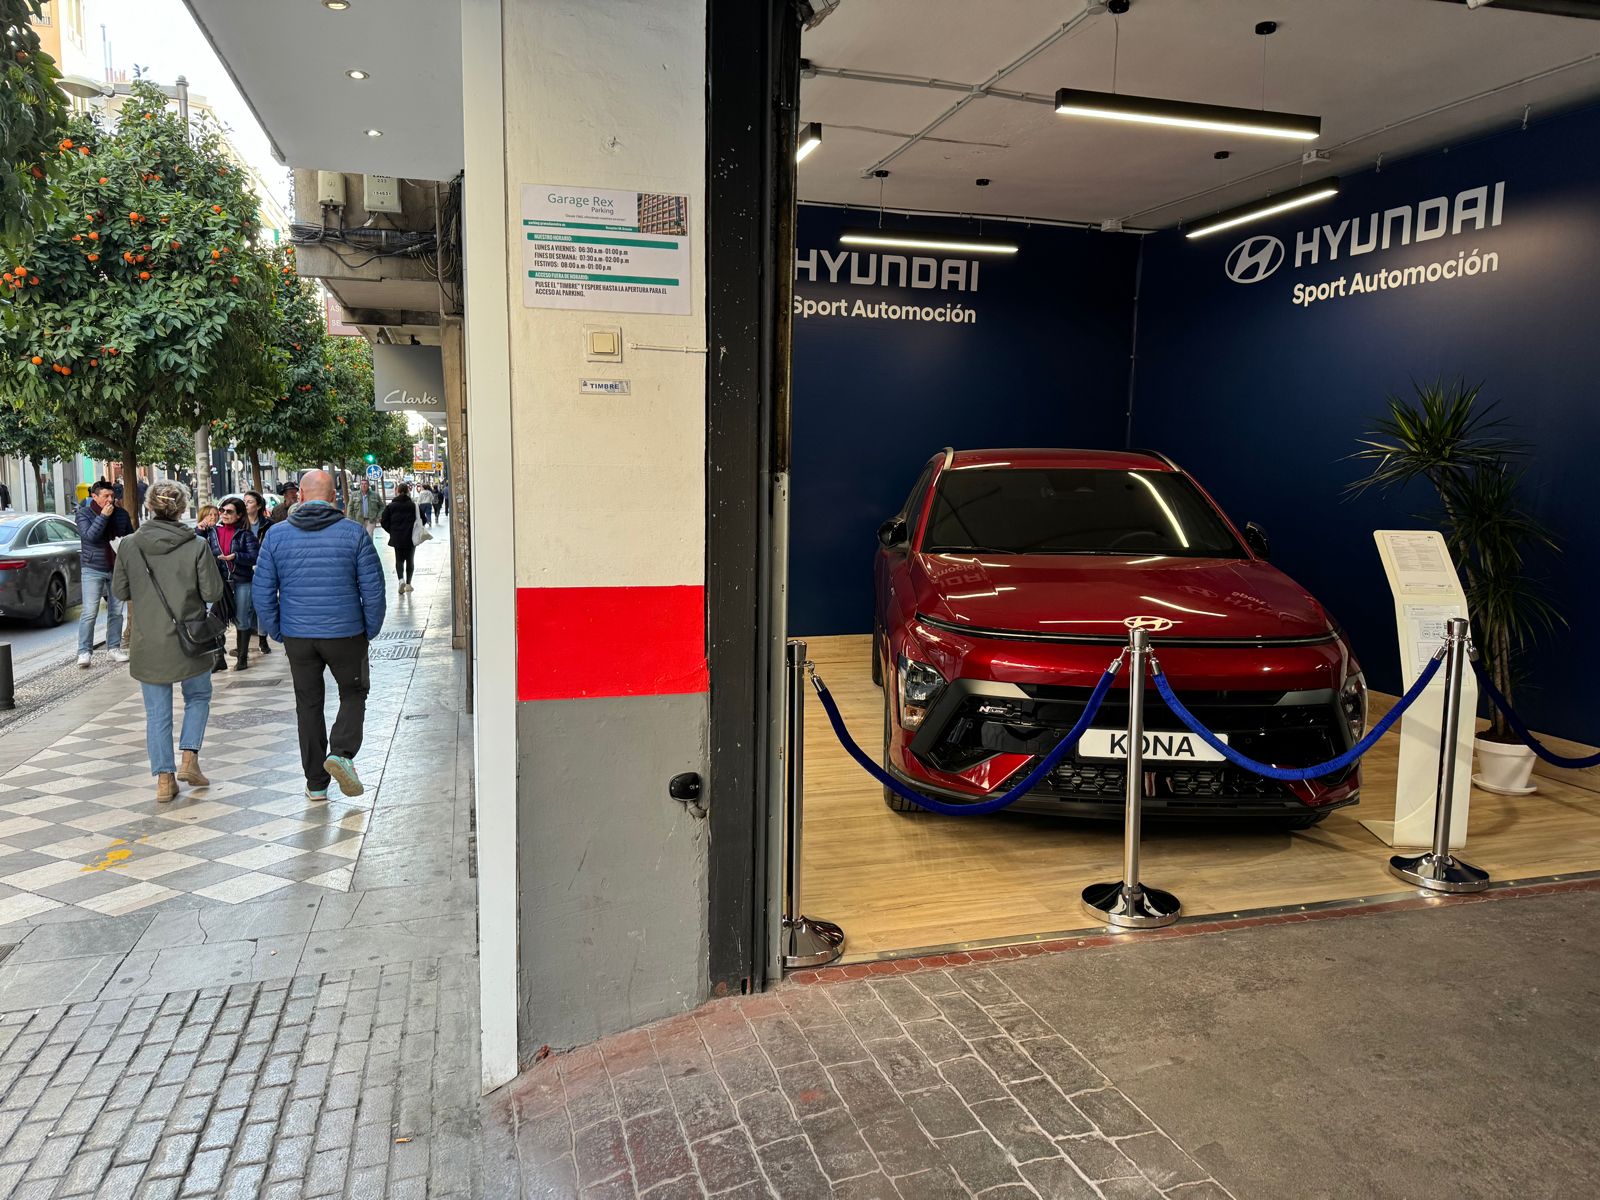 Exposición Hyundai en el centro de Granada